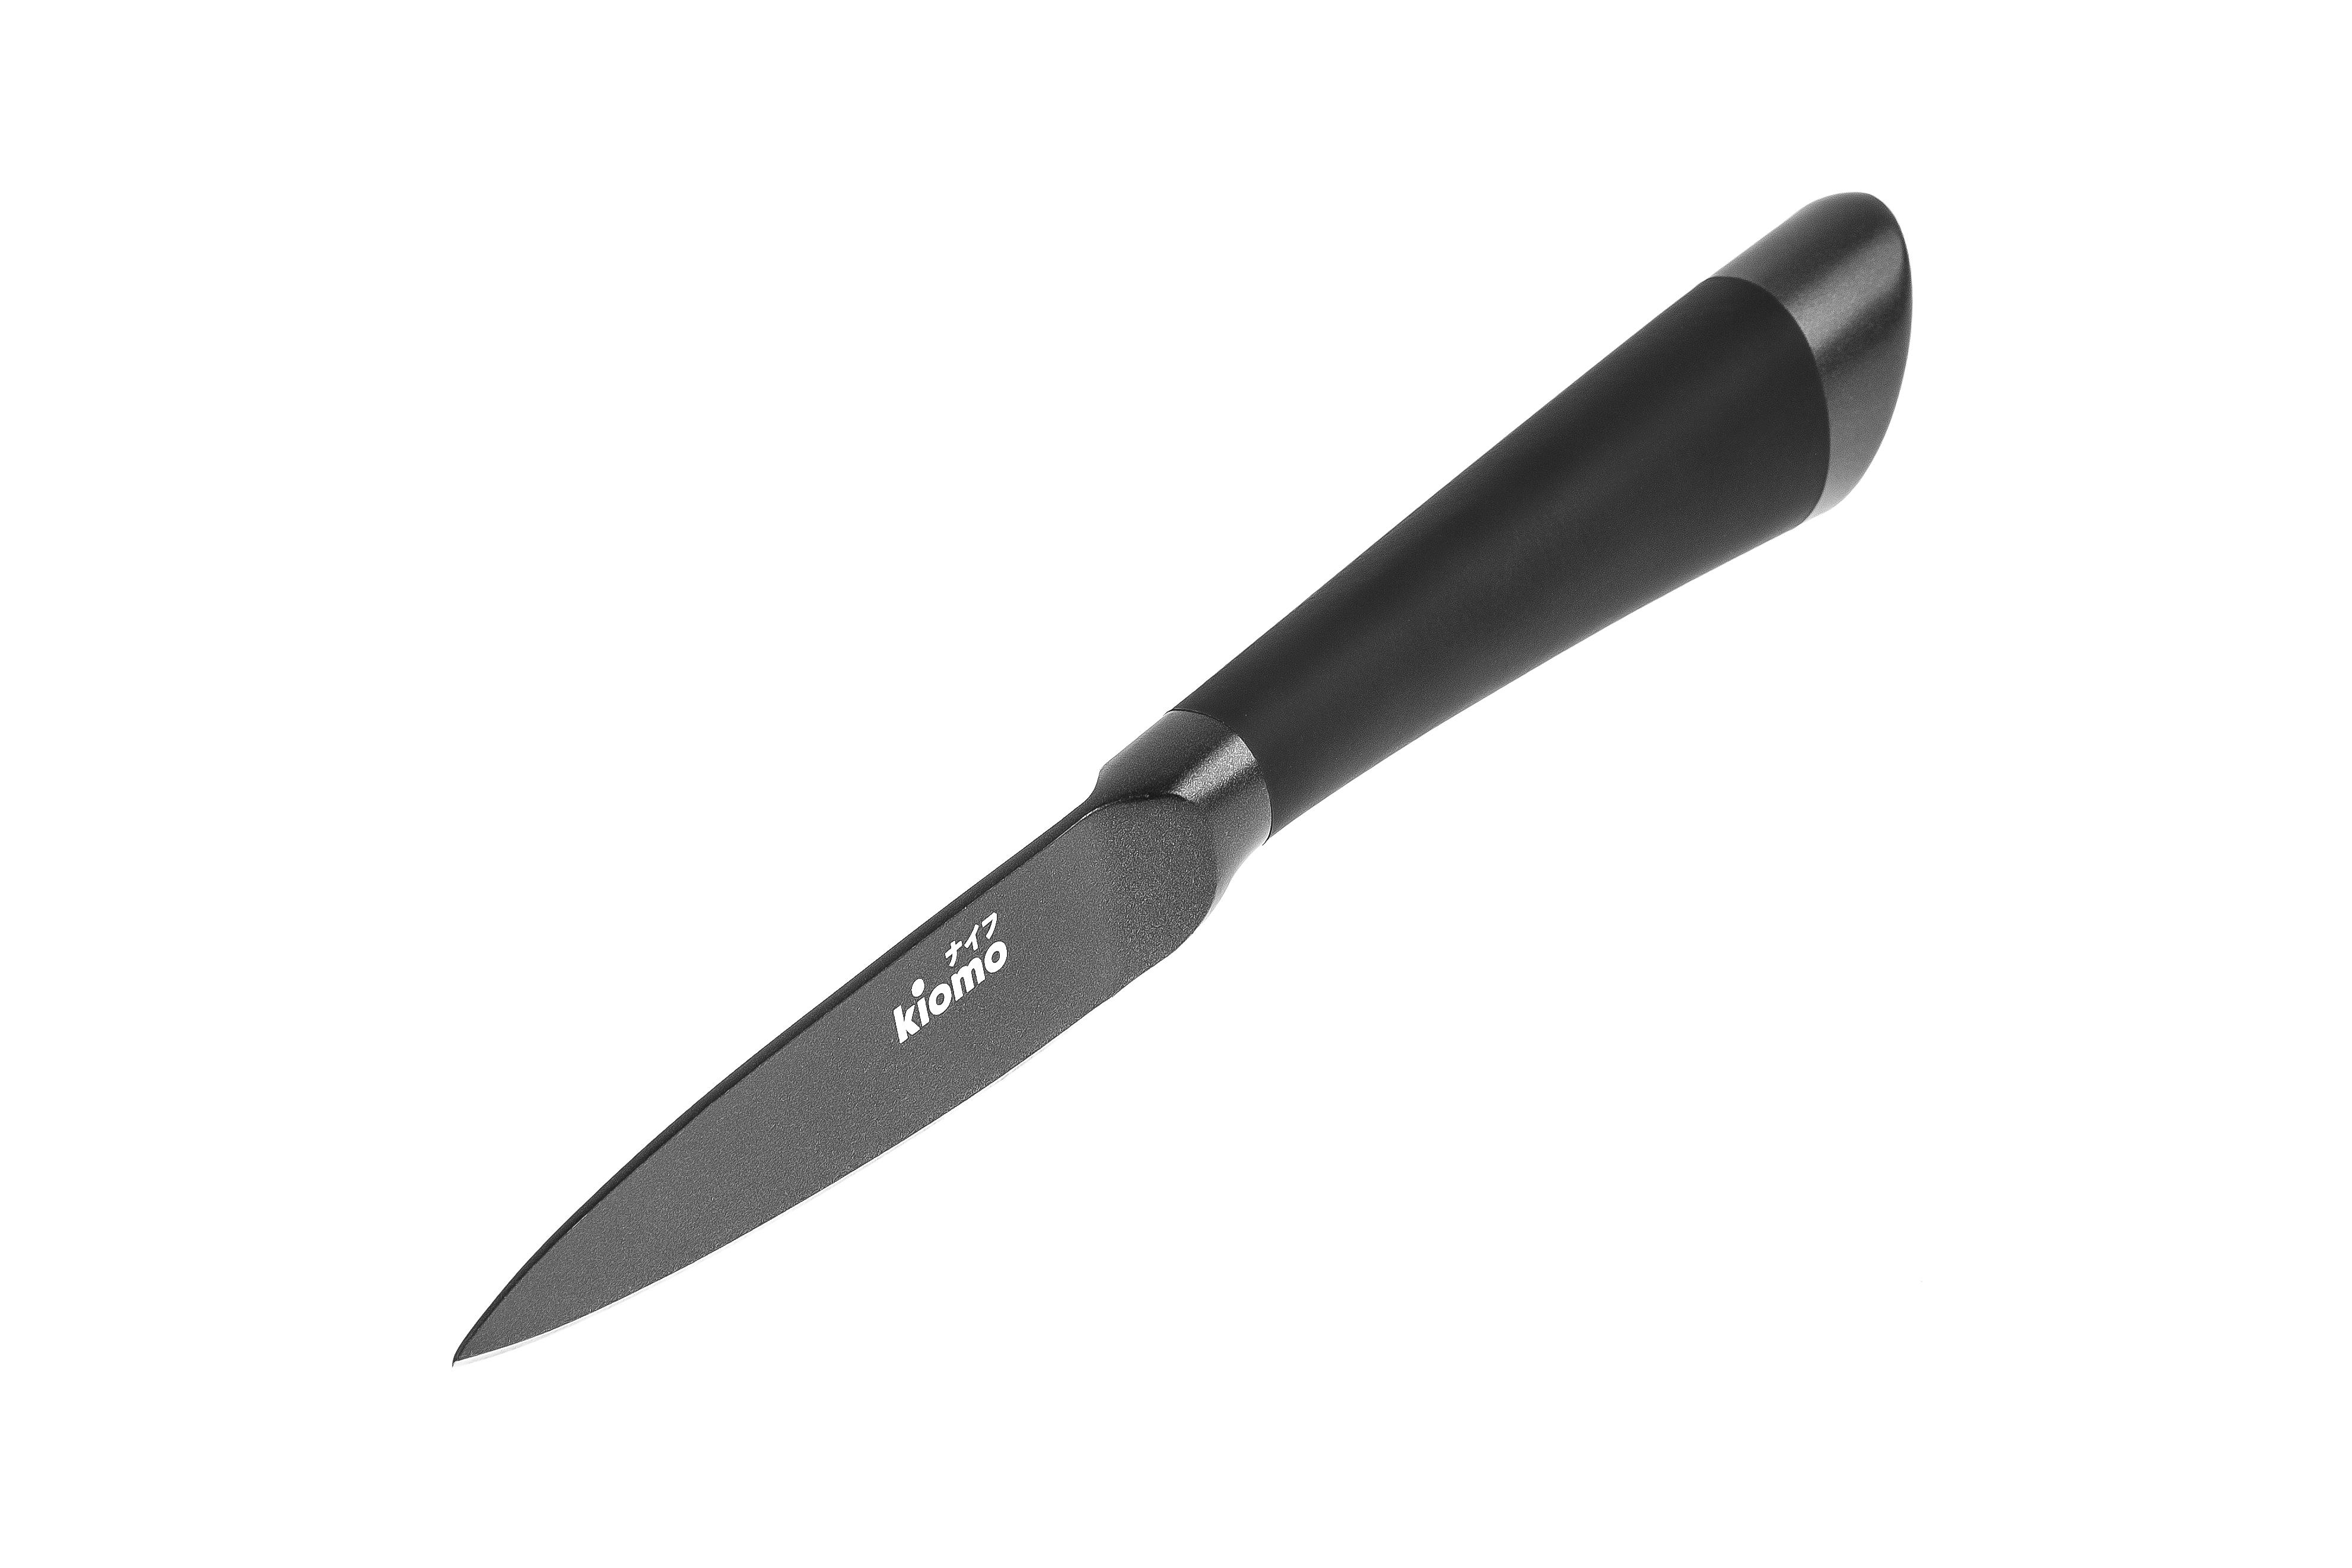 

Нож для очистки овощей Kiomo 32-15, 32-15